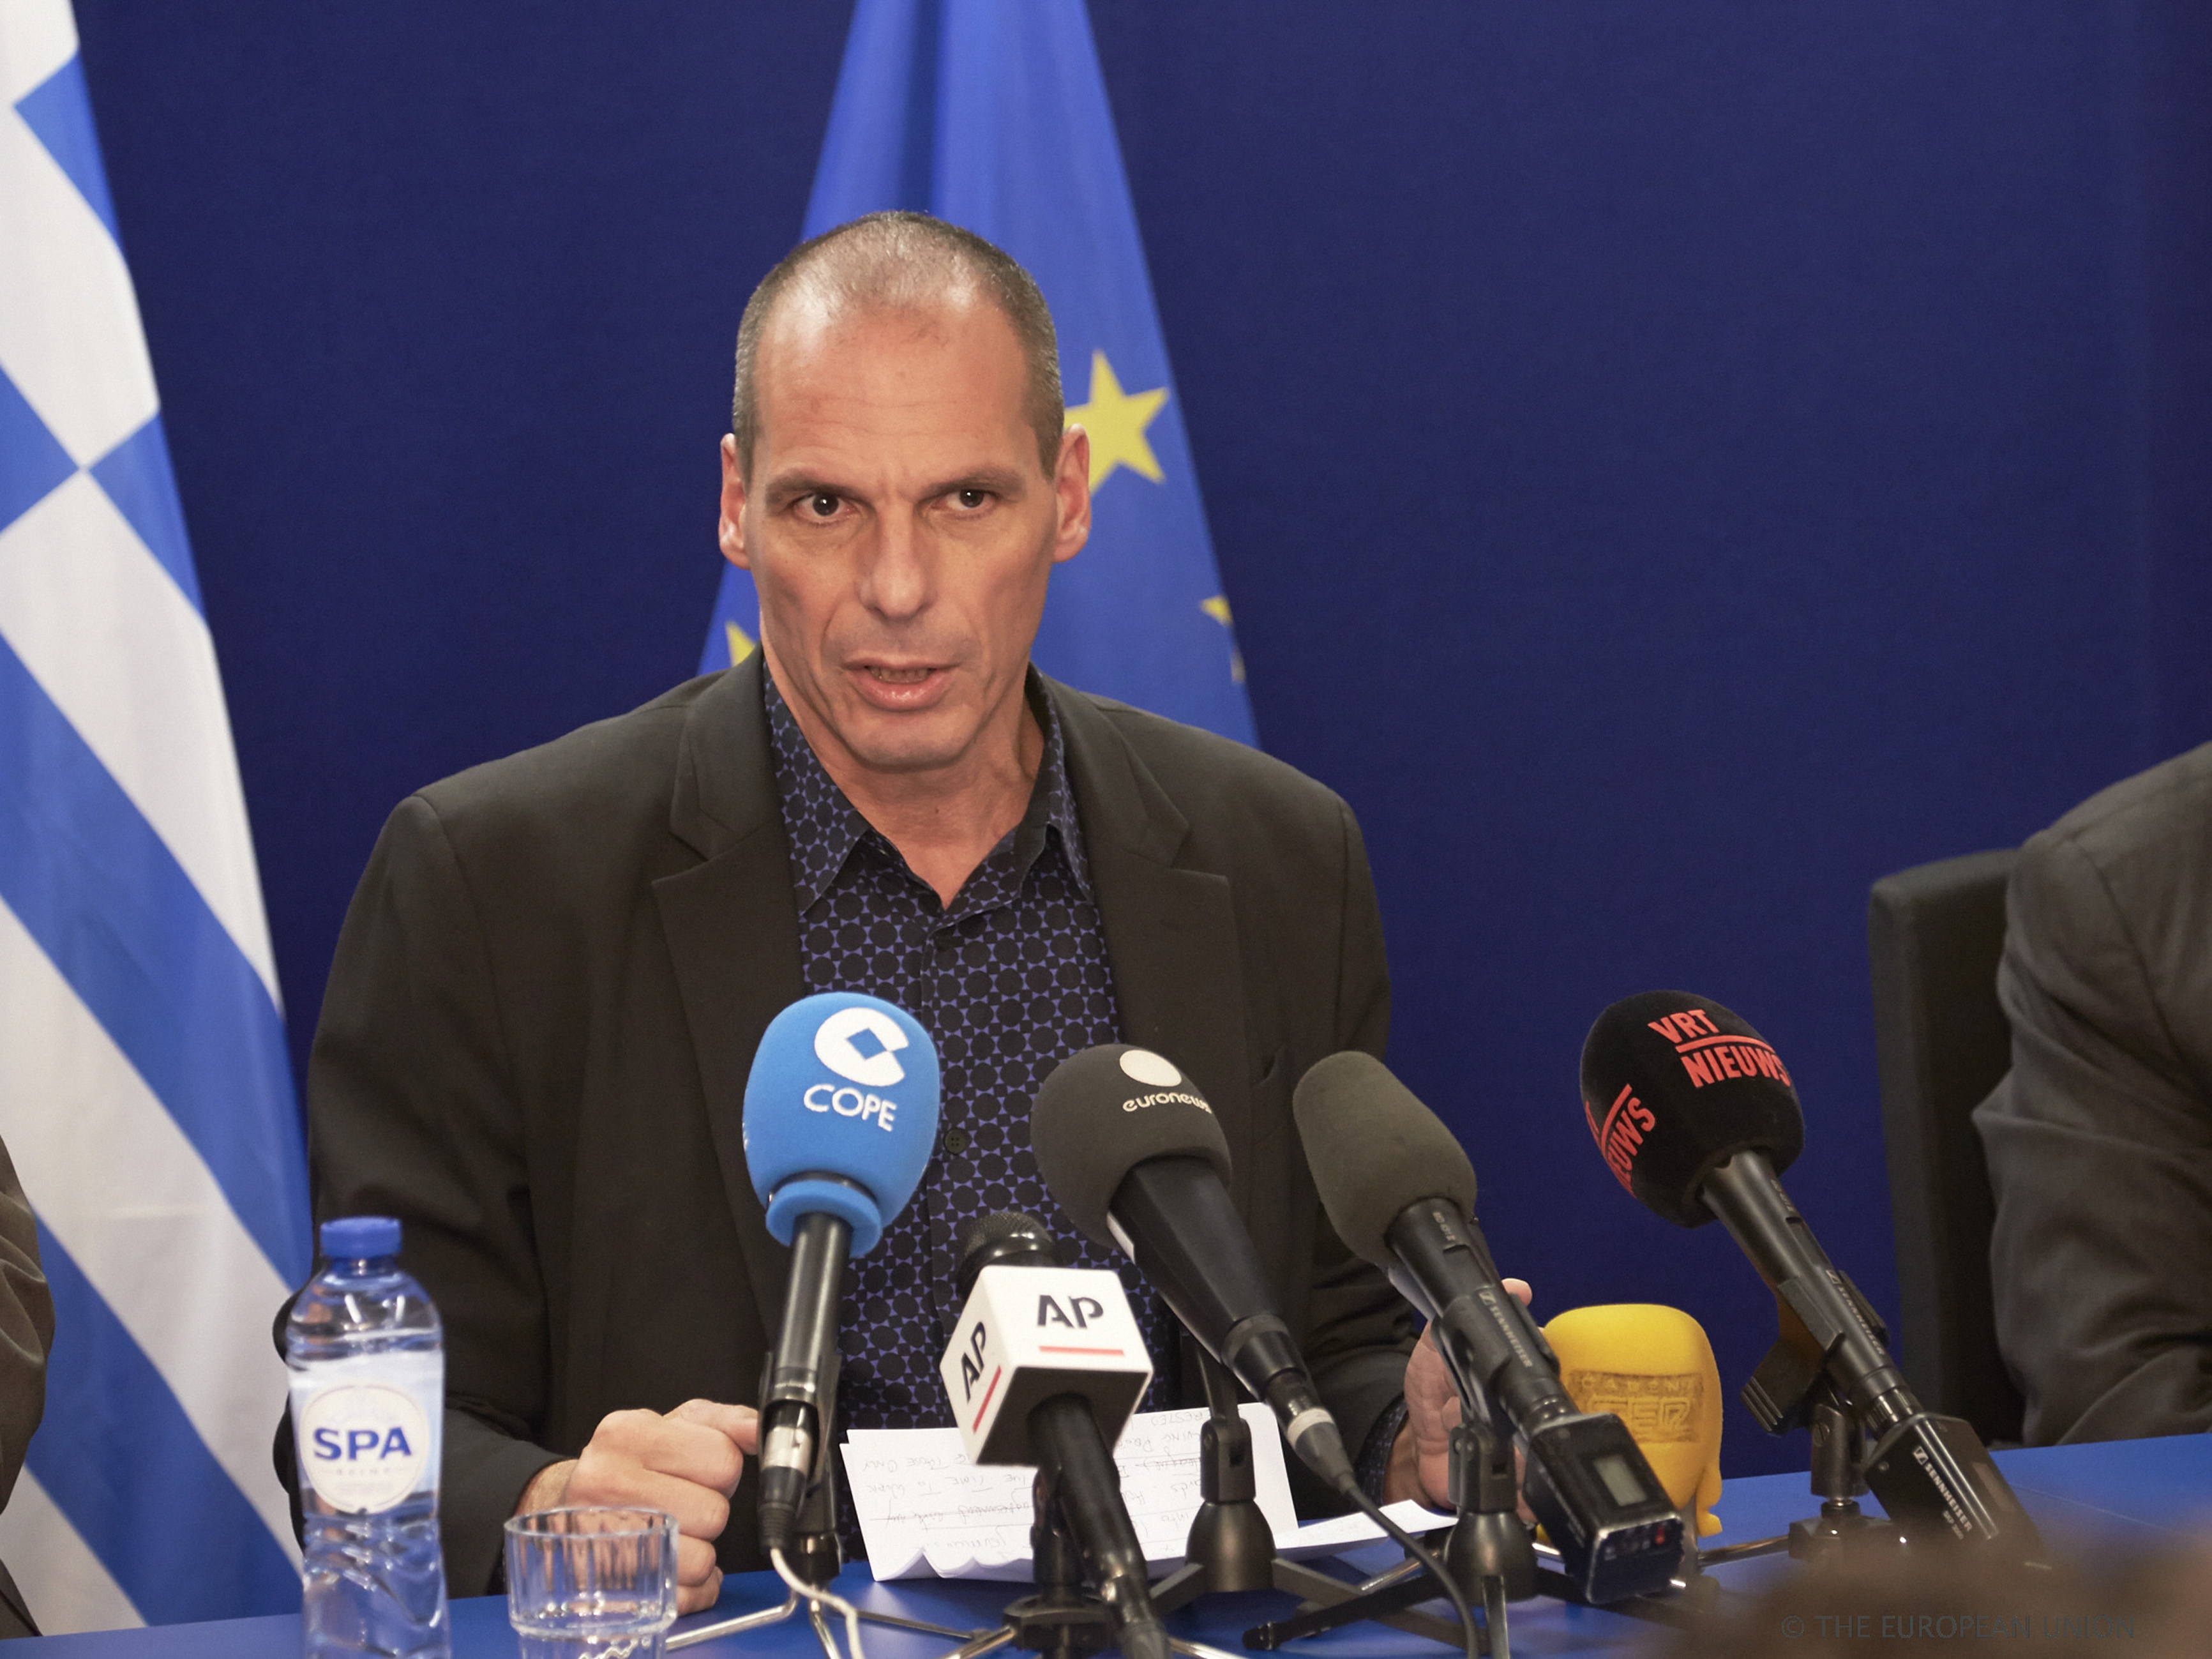 Βαρουφάκης: Αναστολή κάποιων προεκλογικών υποσχέσεων του ΣΥΡΙΖΑ αν χρειαστεί για να οικοδομηθεί εμπιστοσύνη